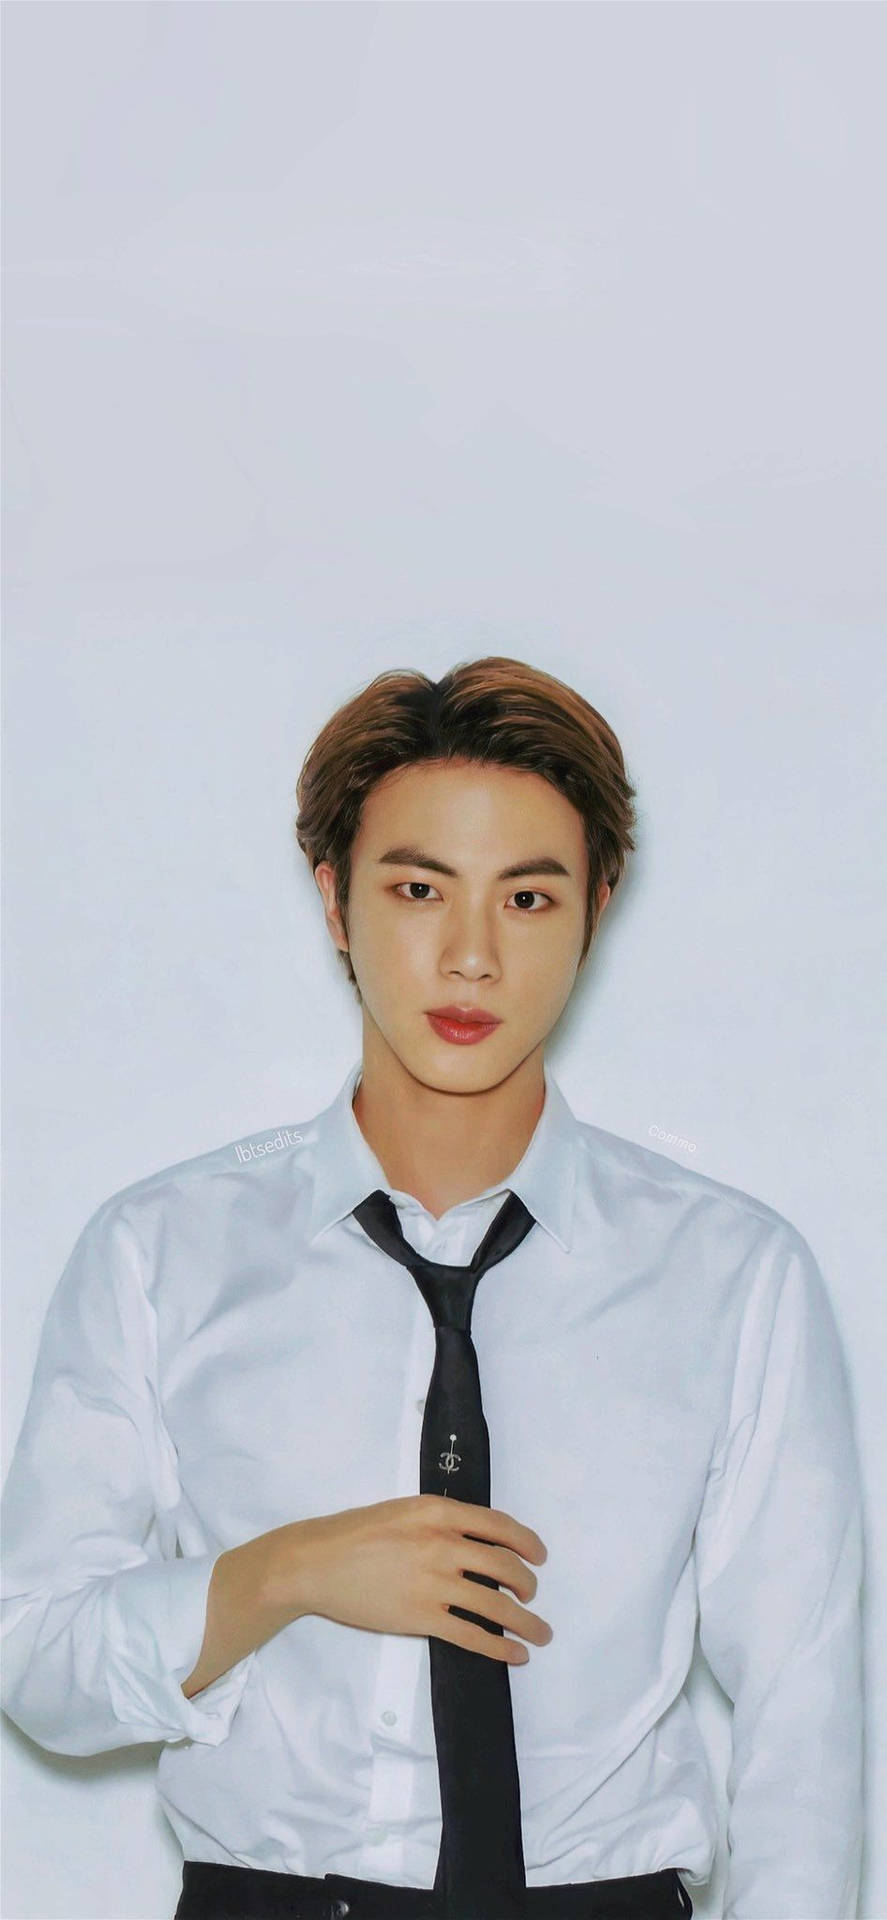 Kim Seok Jin In Black Tie Wallpaper